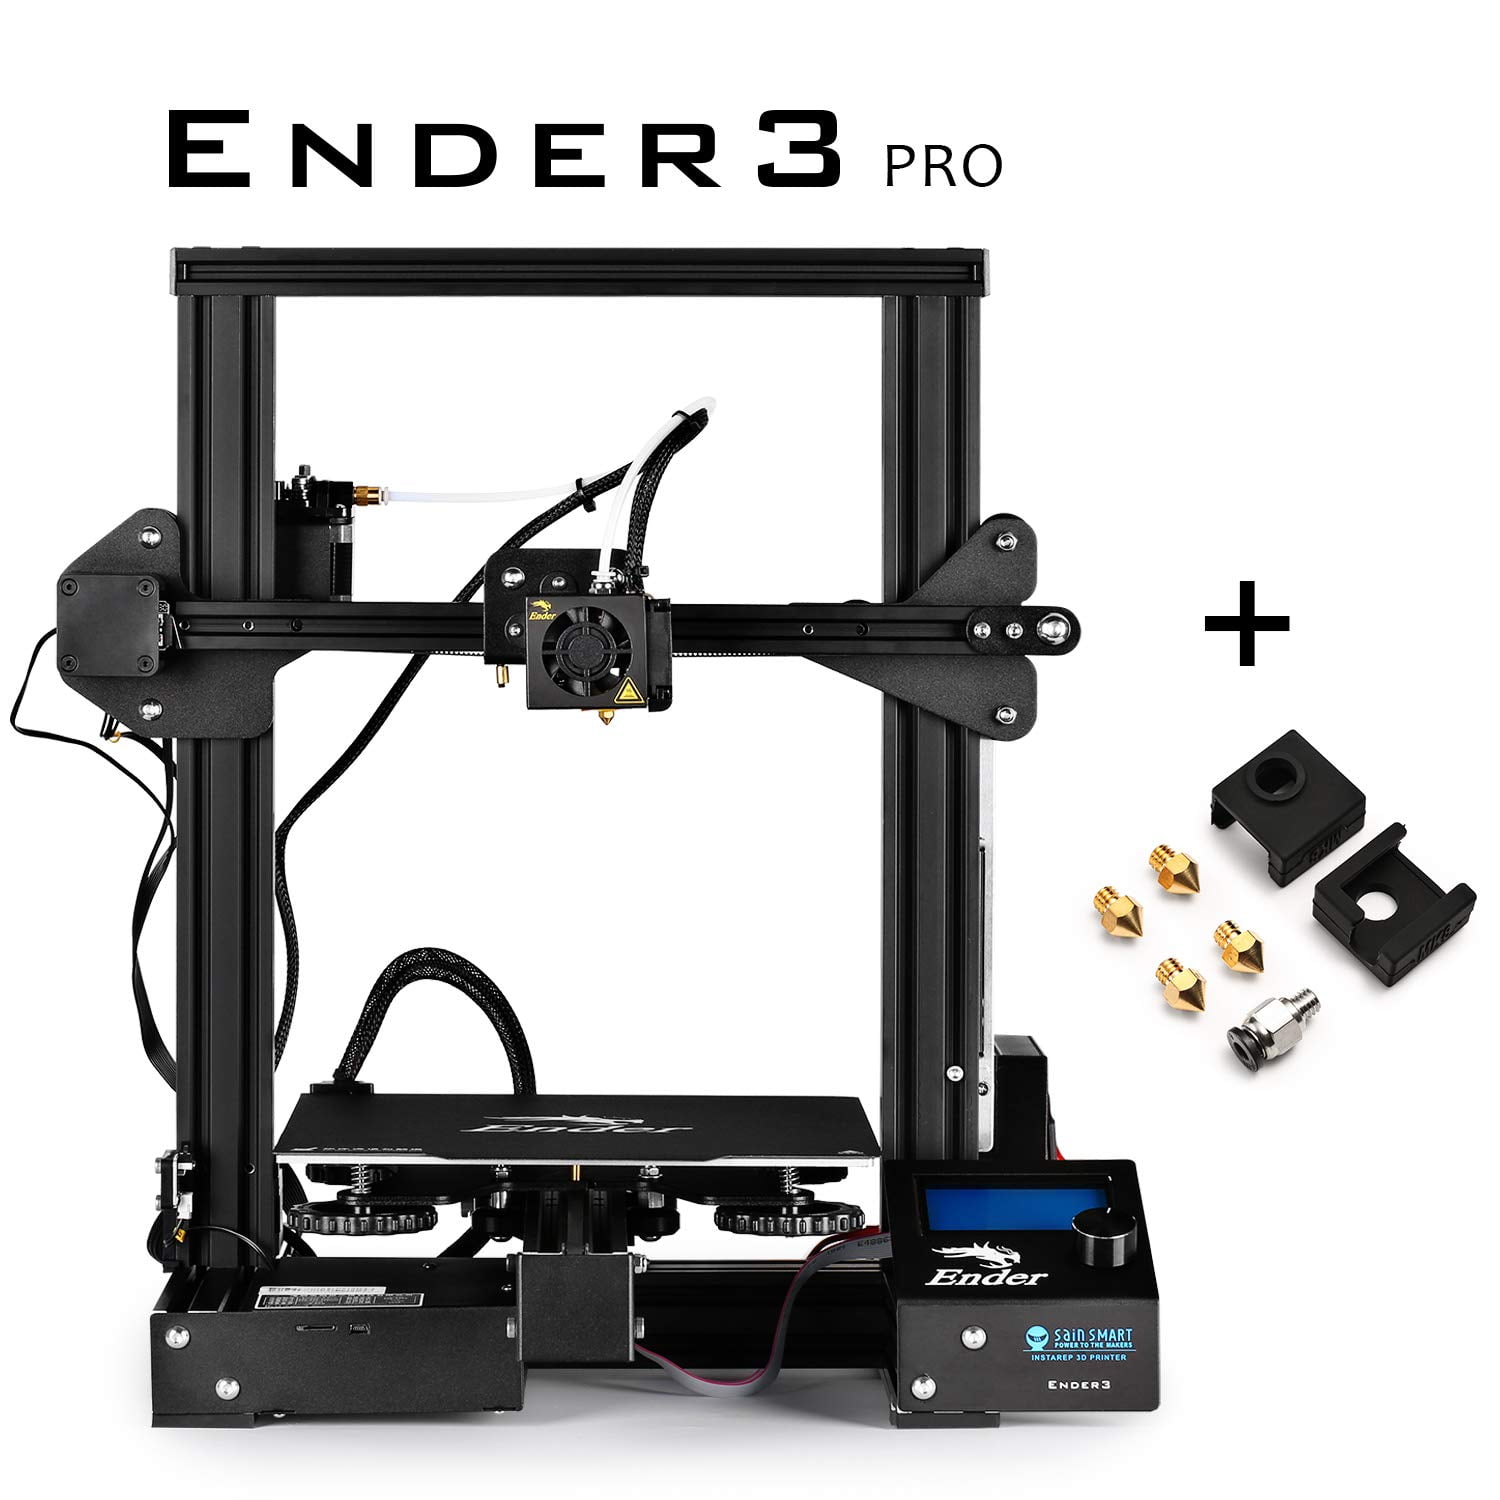 Принтер ender 3 pro. Comgrow Official Creality Ender 3 3d Printer. Принтер Ender 3 Pro сборка. 3d принтер Ender 3 уровень. Creality Ender 3 Pro купить.